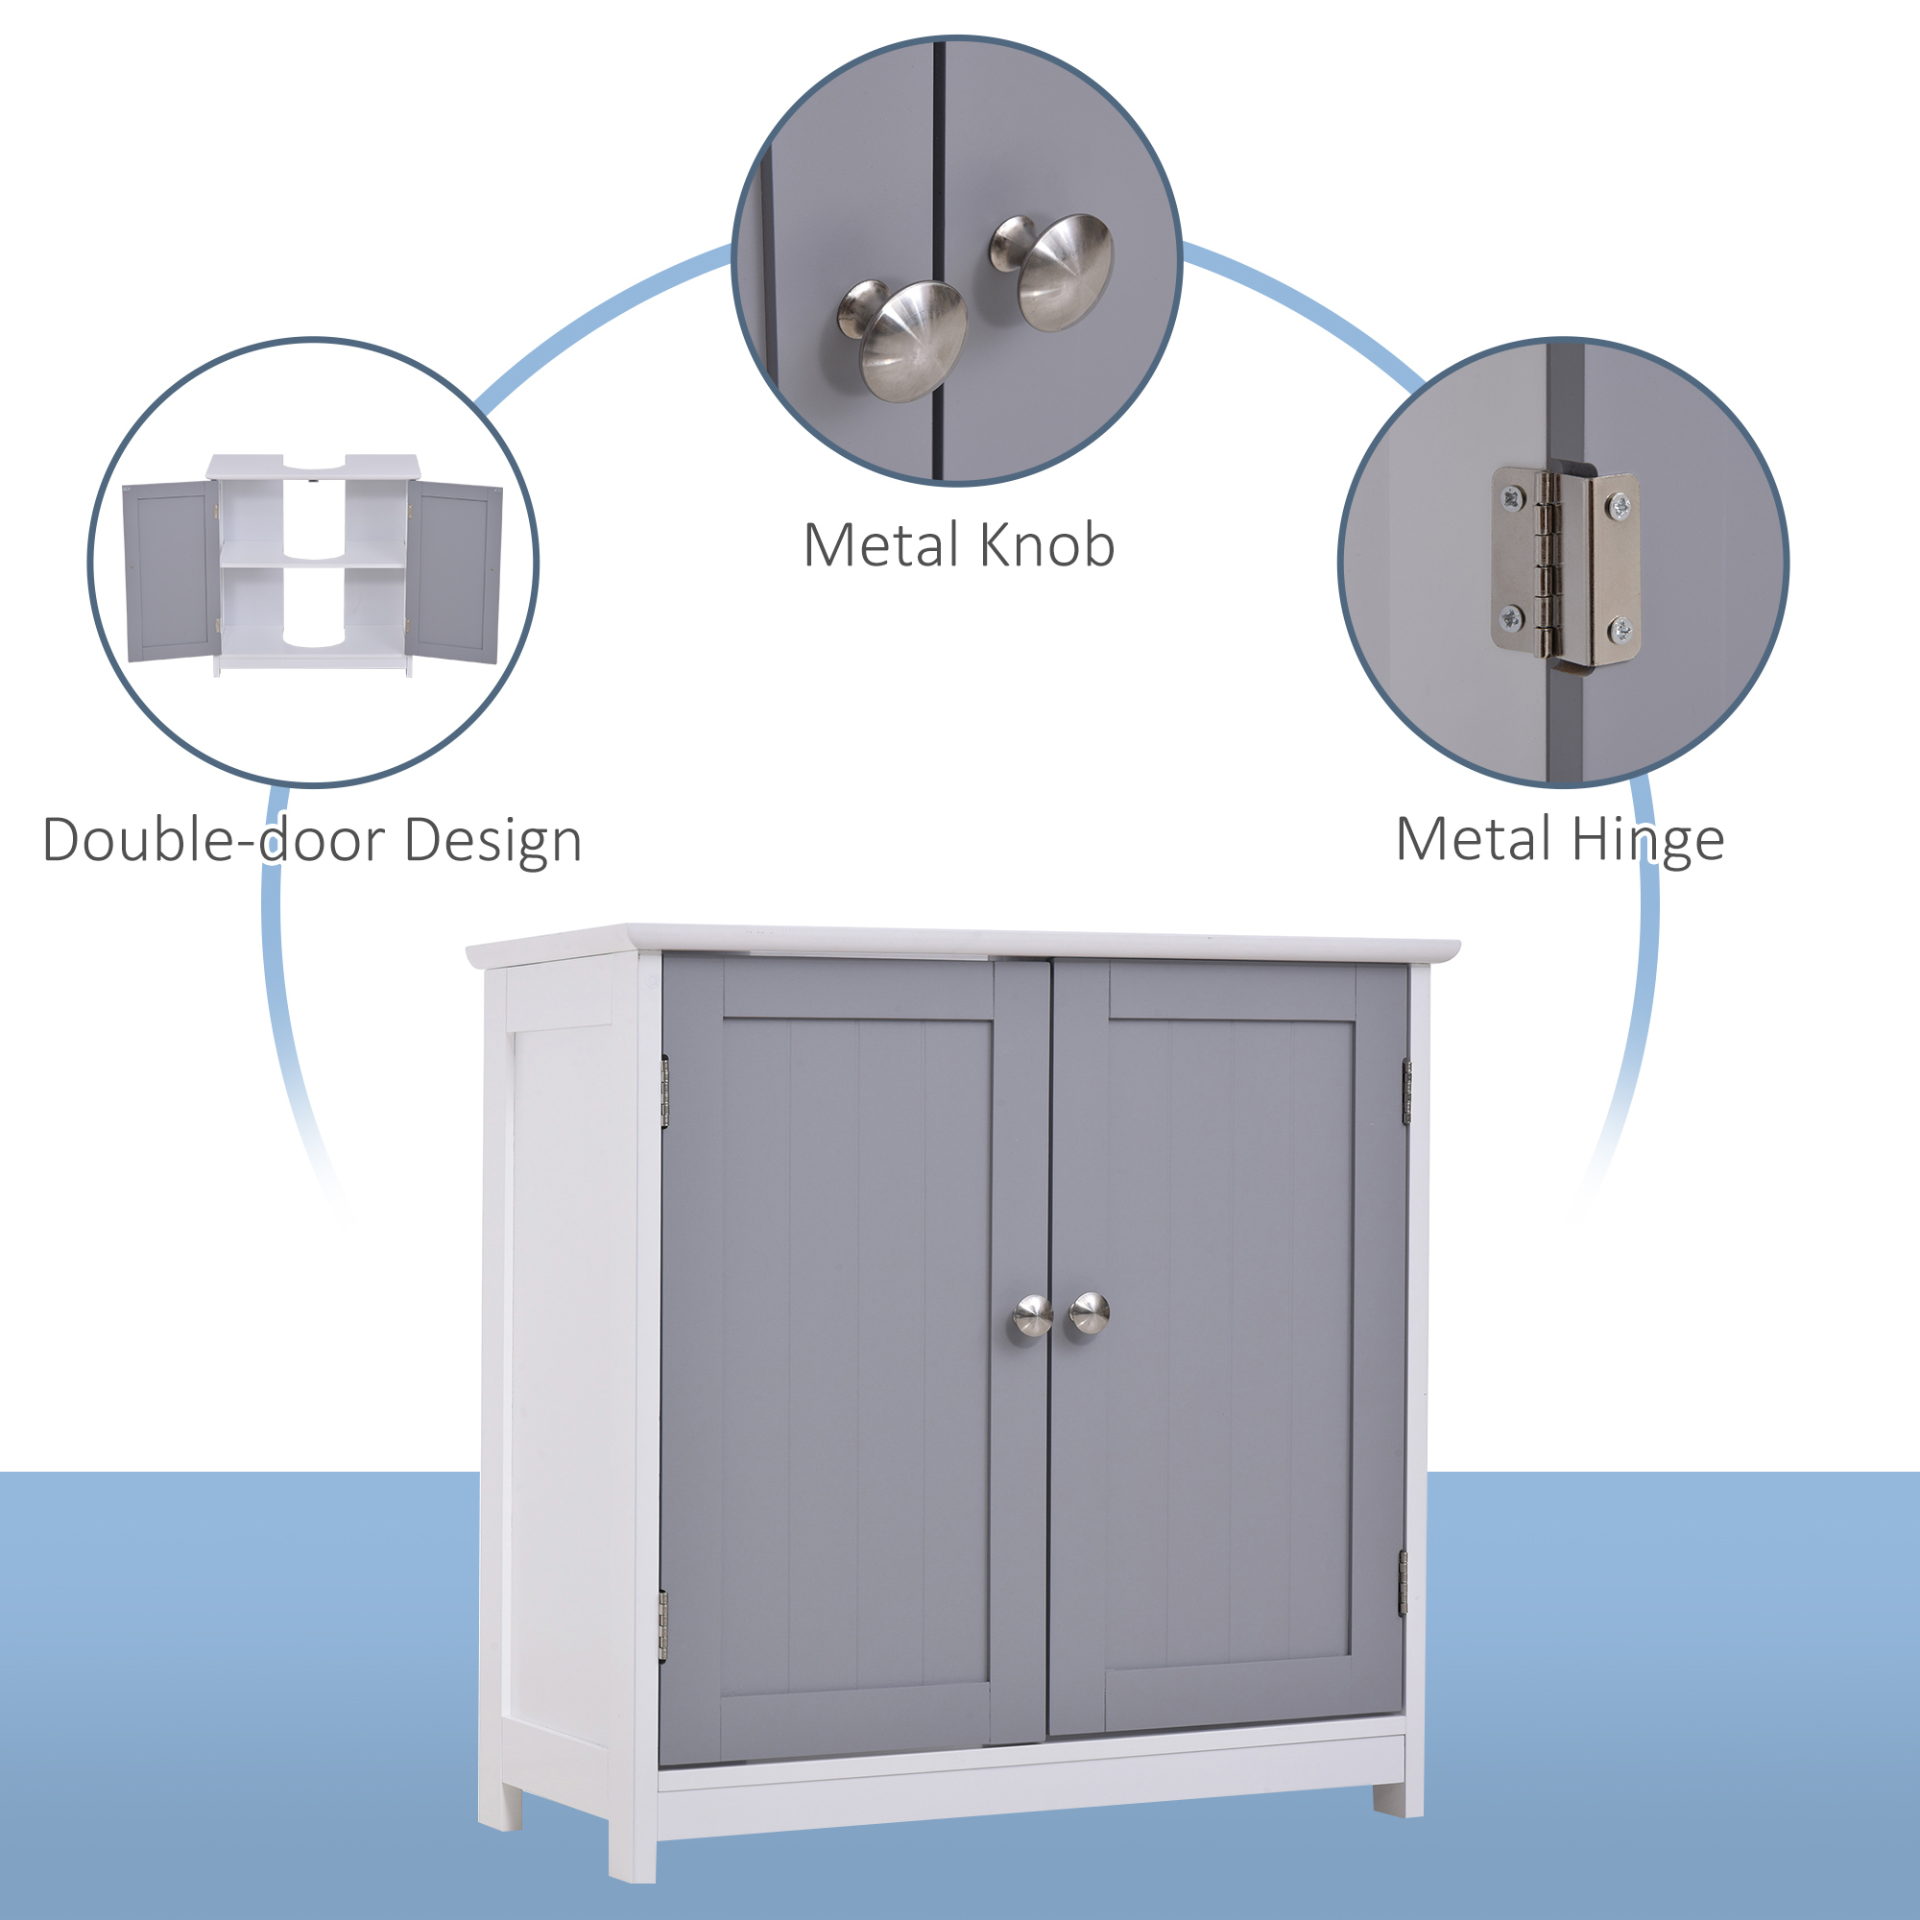 kleankin 60x60cm Under-Sink Storage Cabinet w/ Adjustable Shelf Handles Drain Hole Bathroom Cabinet Space Saver Organizer White and Grey